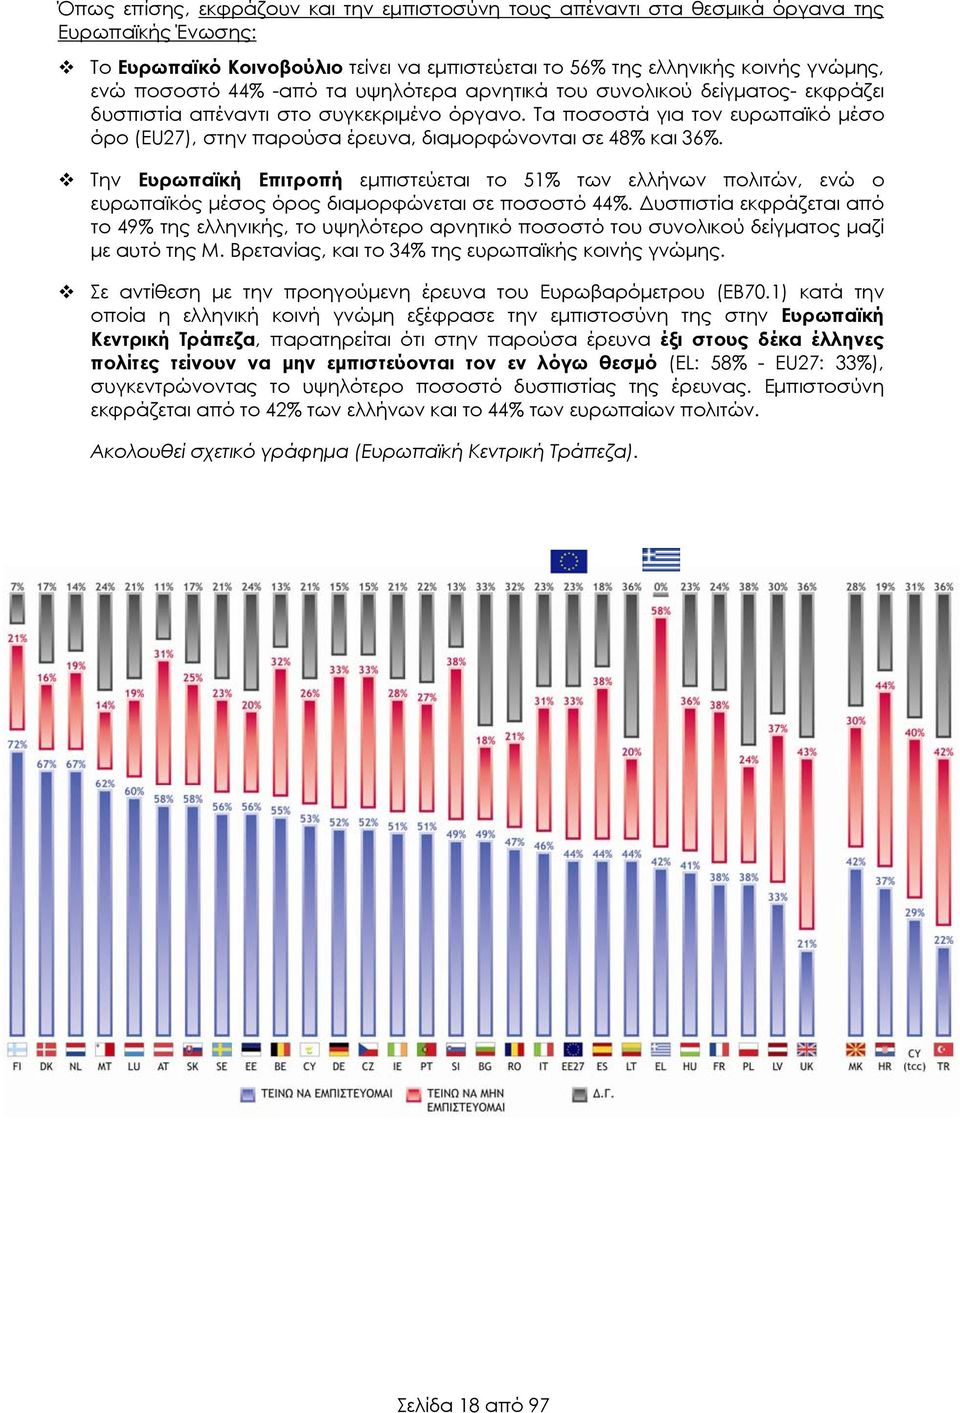 Τα ποσοστά για τον ευρωπαϊκό μέσο όρο (EU27), στην παρούσα έρευνα, διαμορφώνονται σε 48% και 36%.